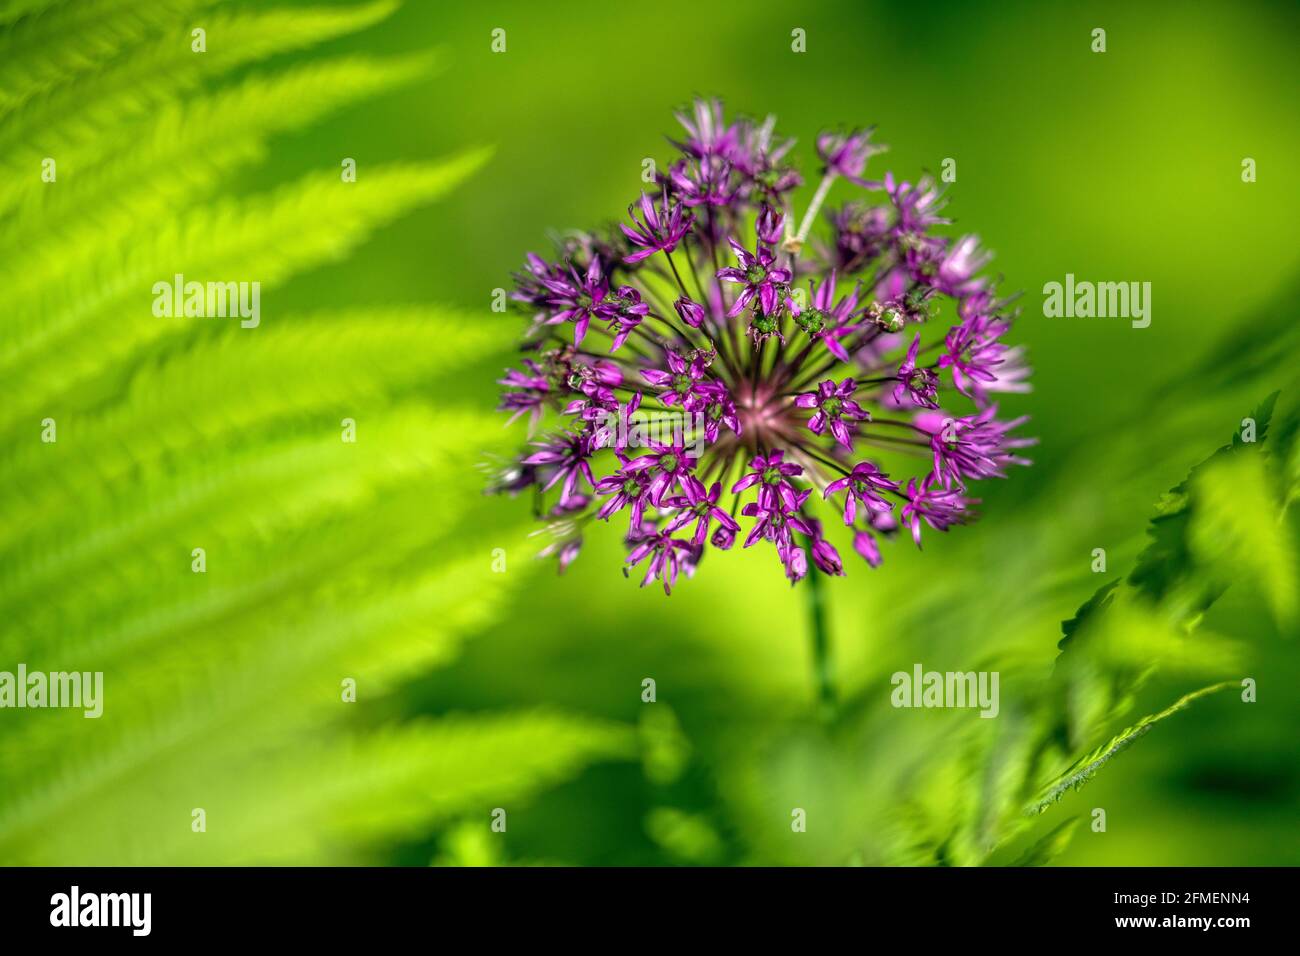 Allium Blume (Zierzwiebel) im Frühjahr - North Carolina Arboretum, Asheville, North Carolina, USA Stockfoto